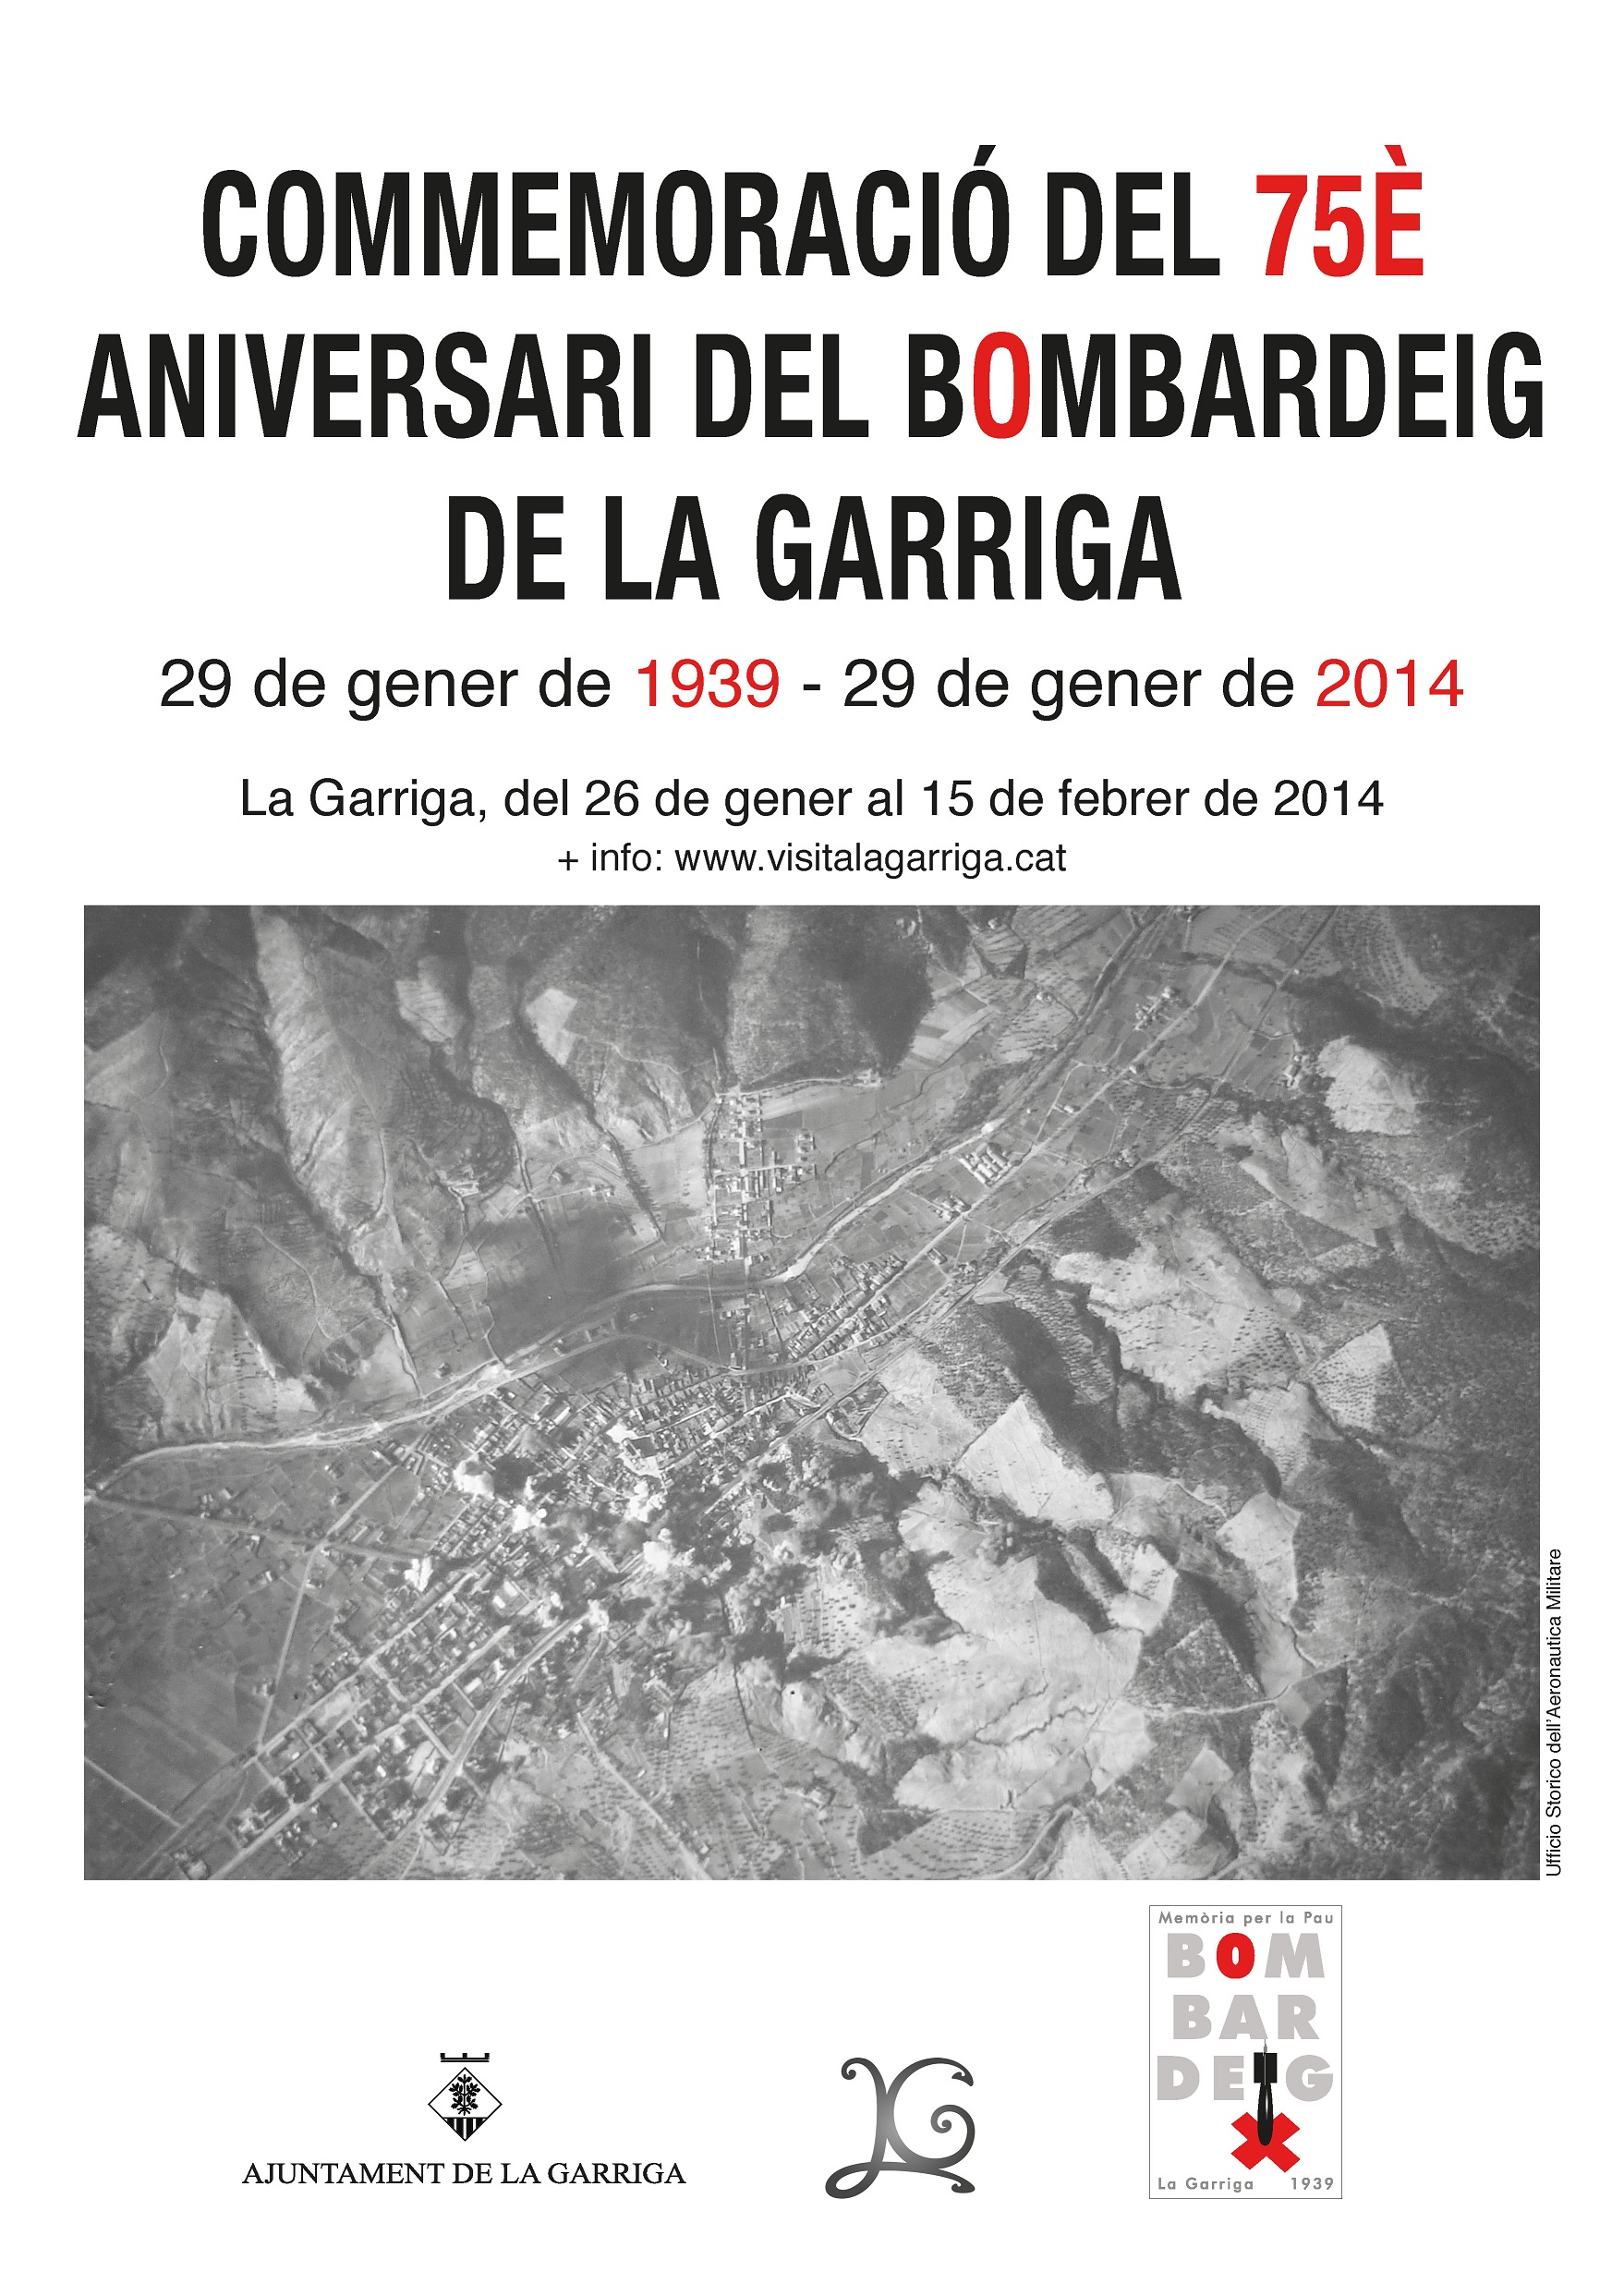 CommemoraciÃ³ del bombardeig a la Garriga 2014